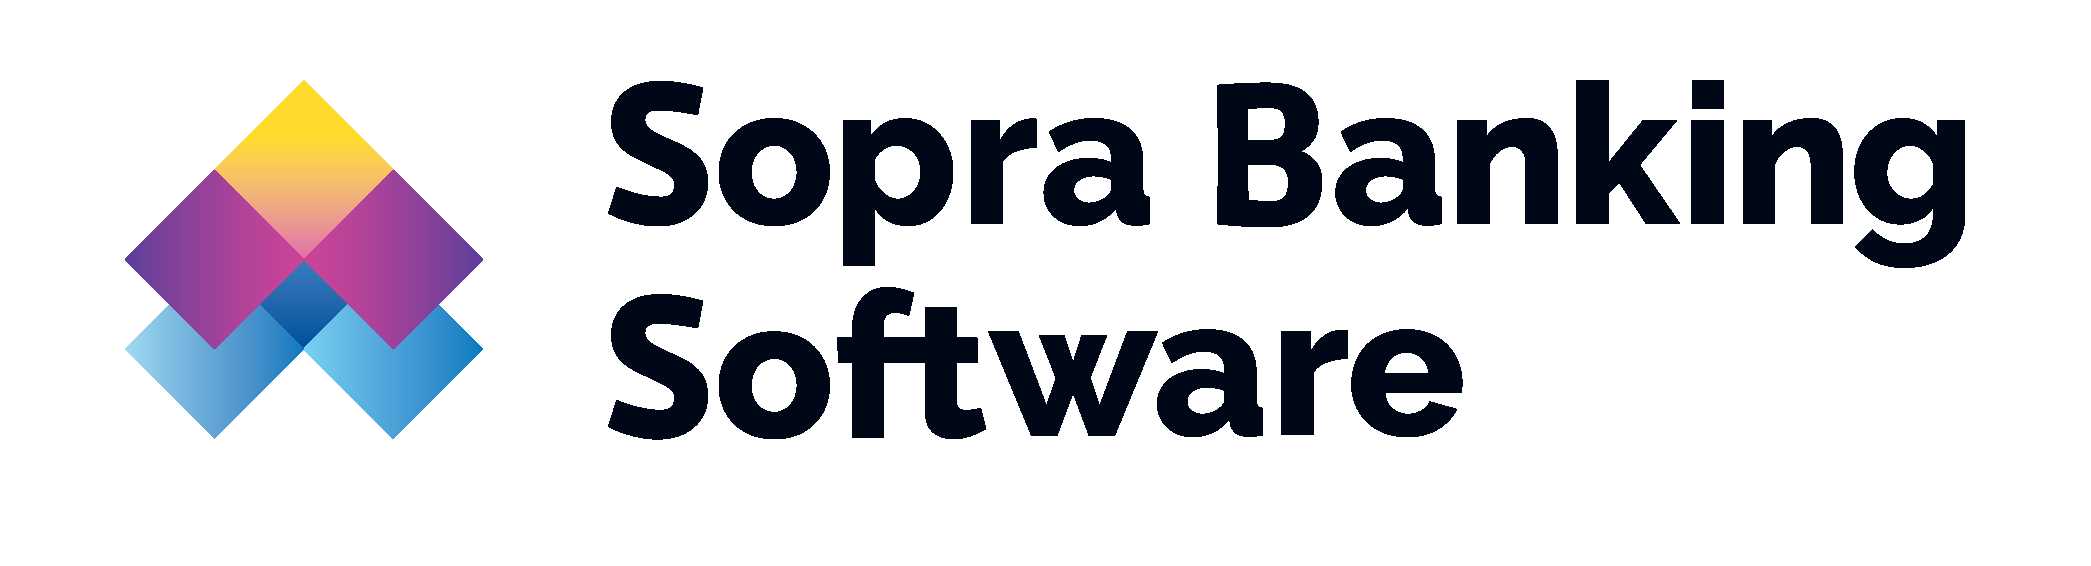 Sopra-Banking-Software.png